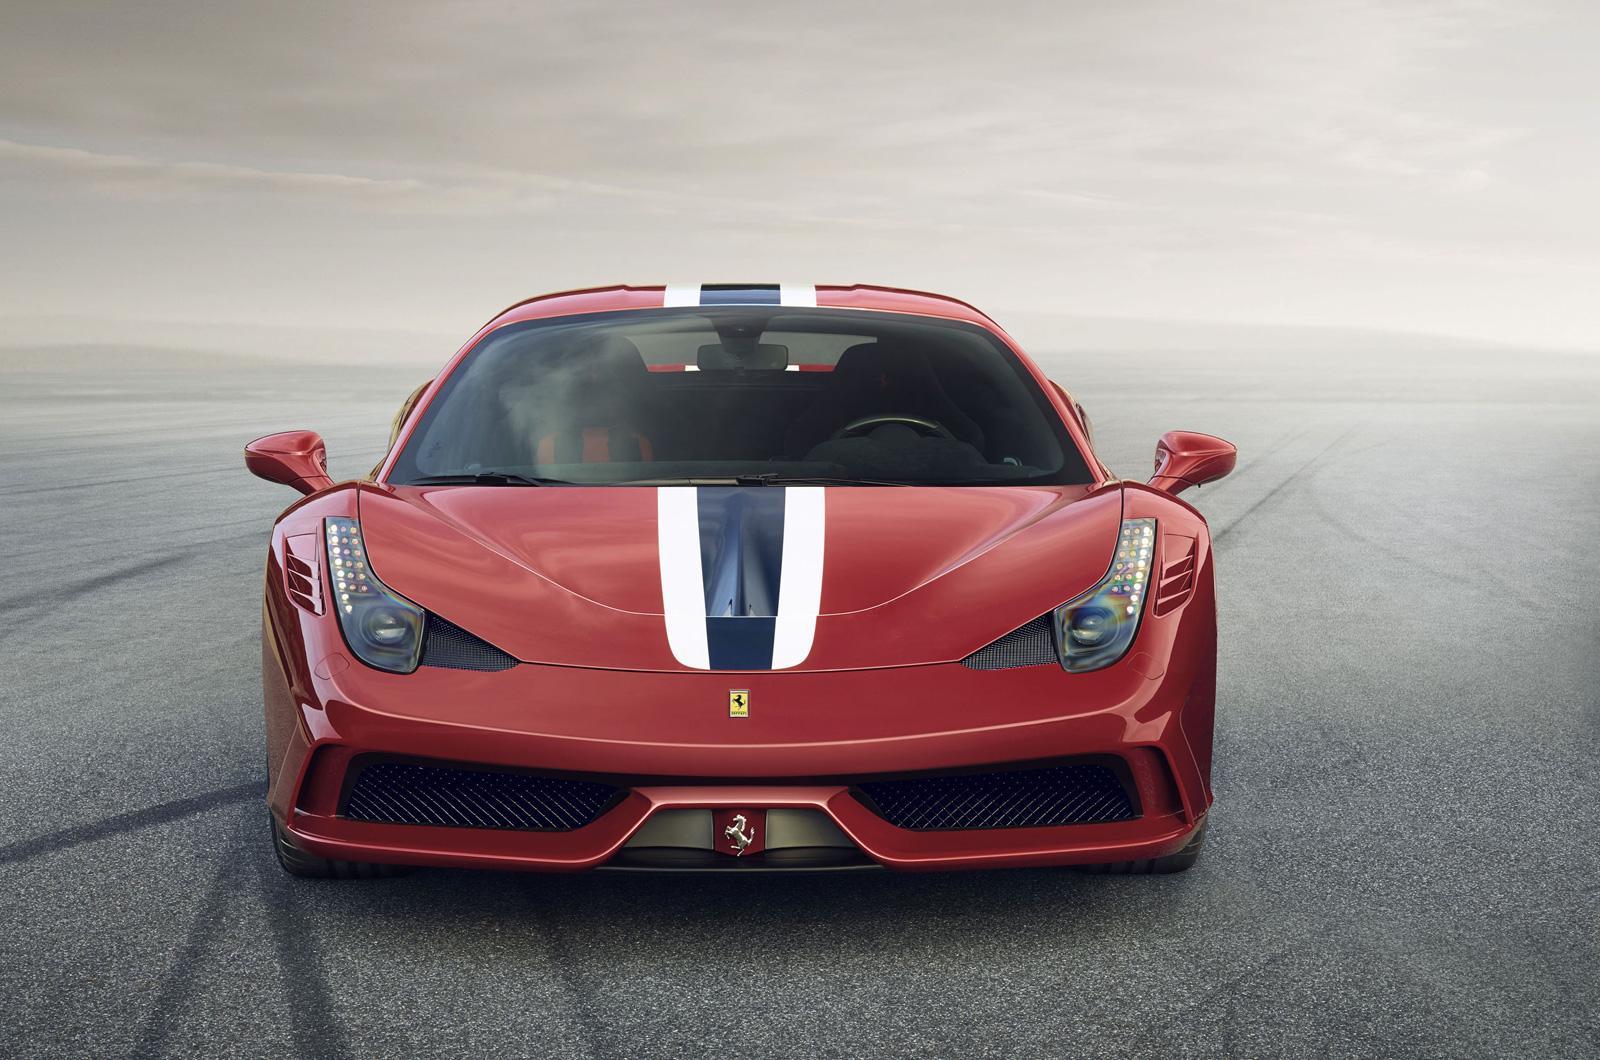 VIDEO. În cât timp atinge "suta" cel mai nou Ferrari